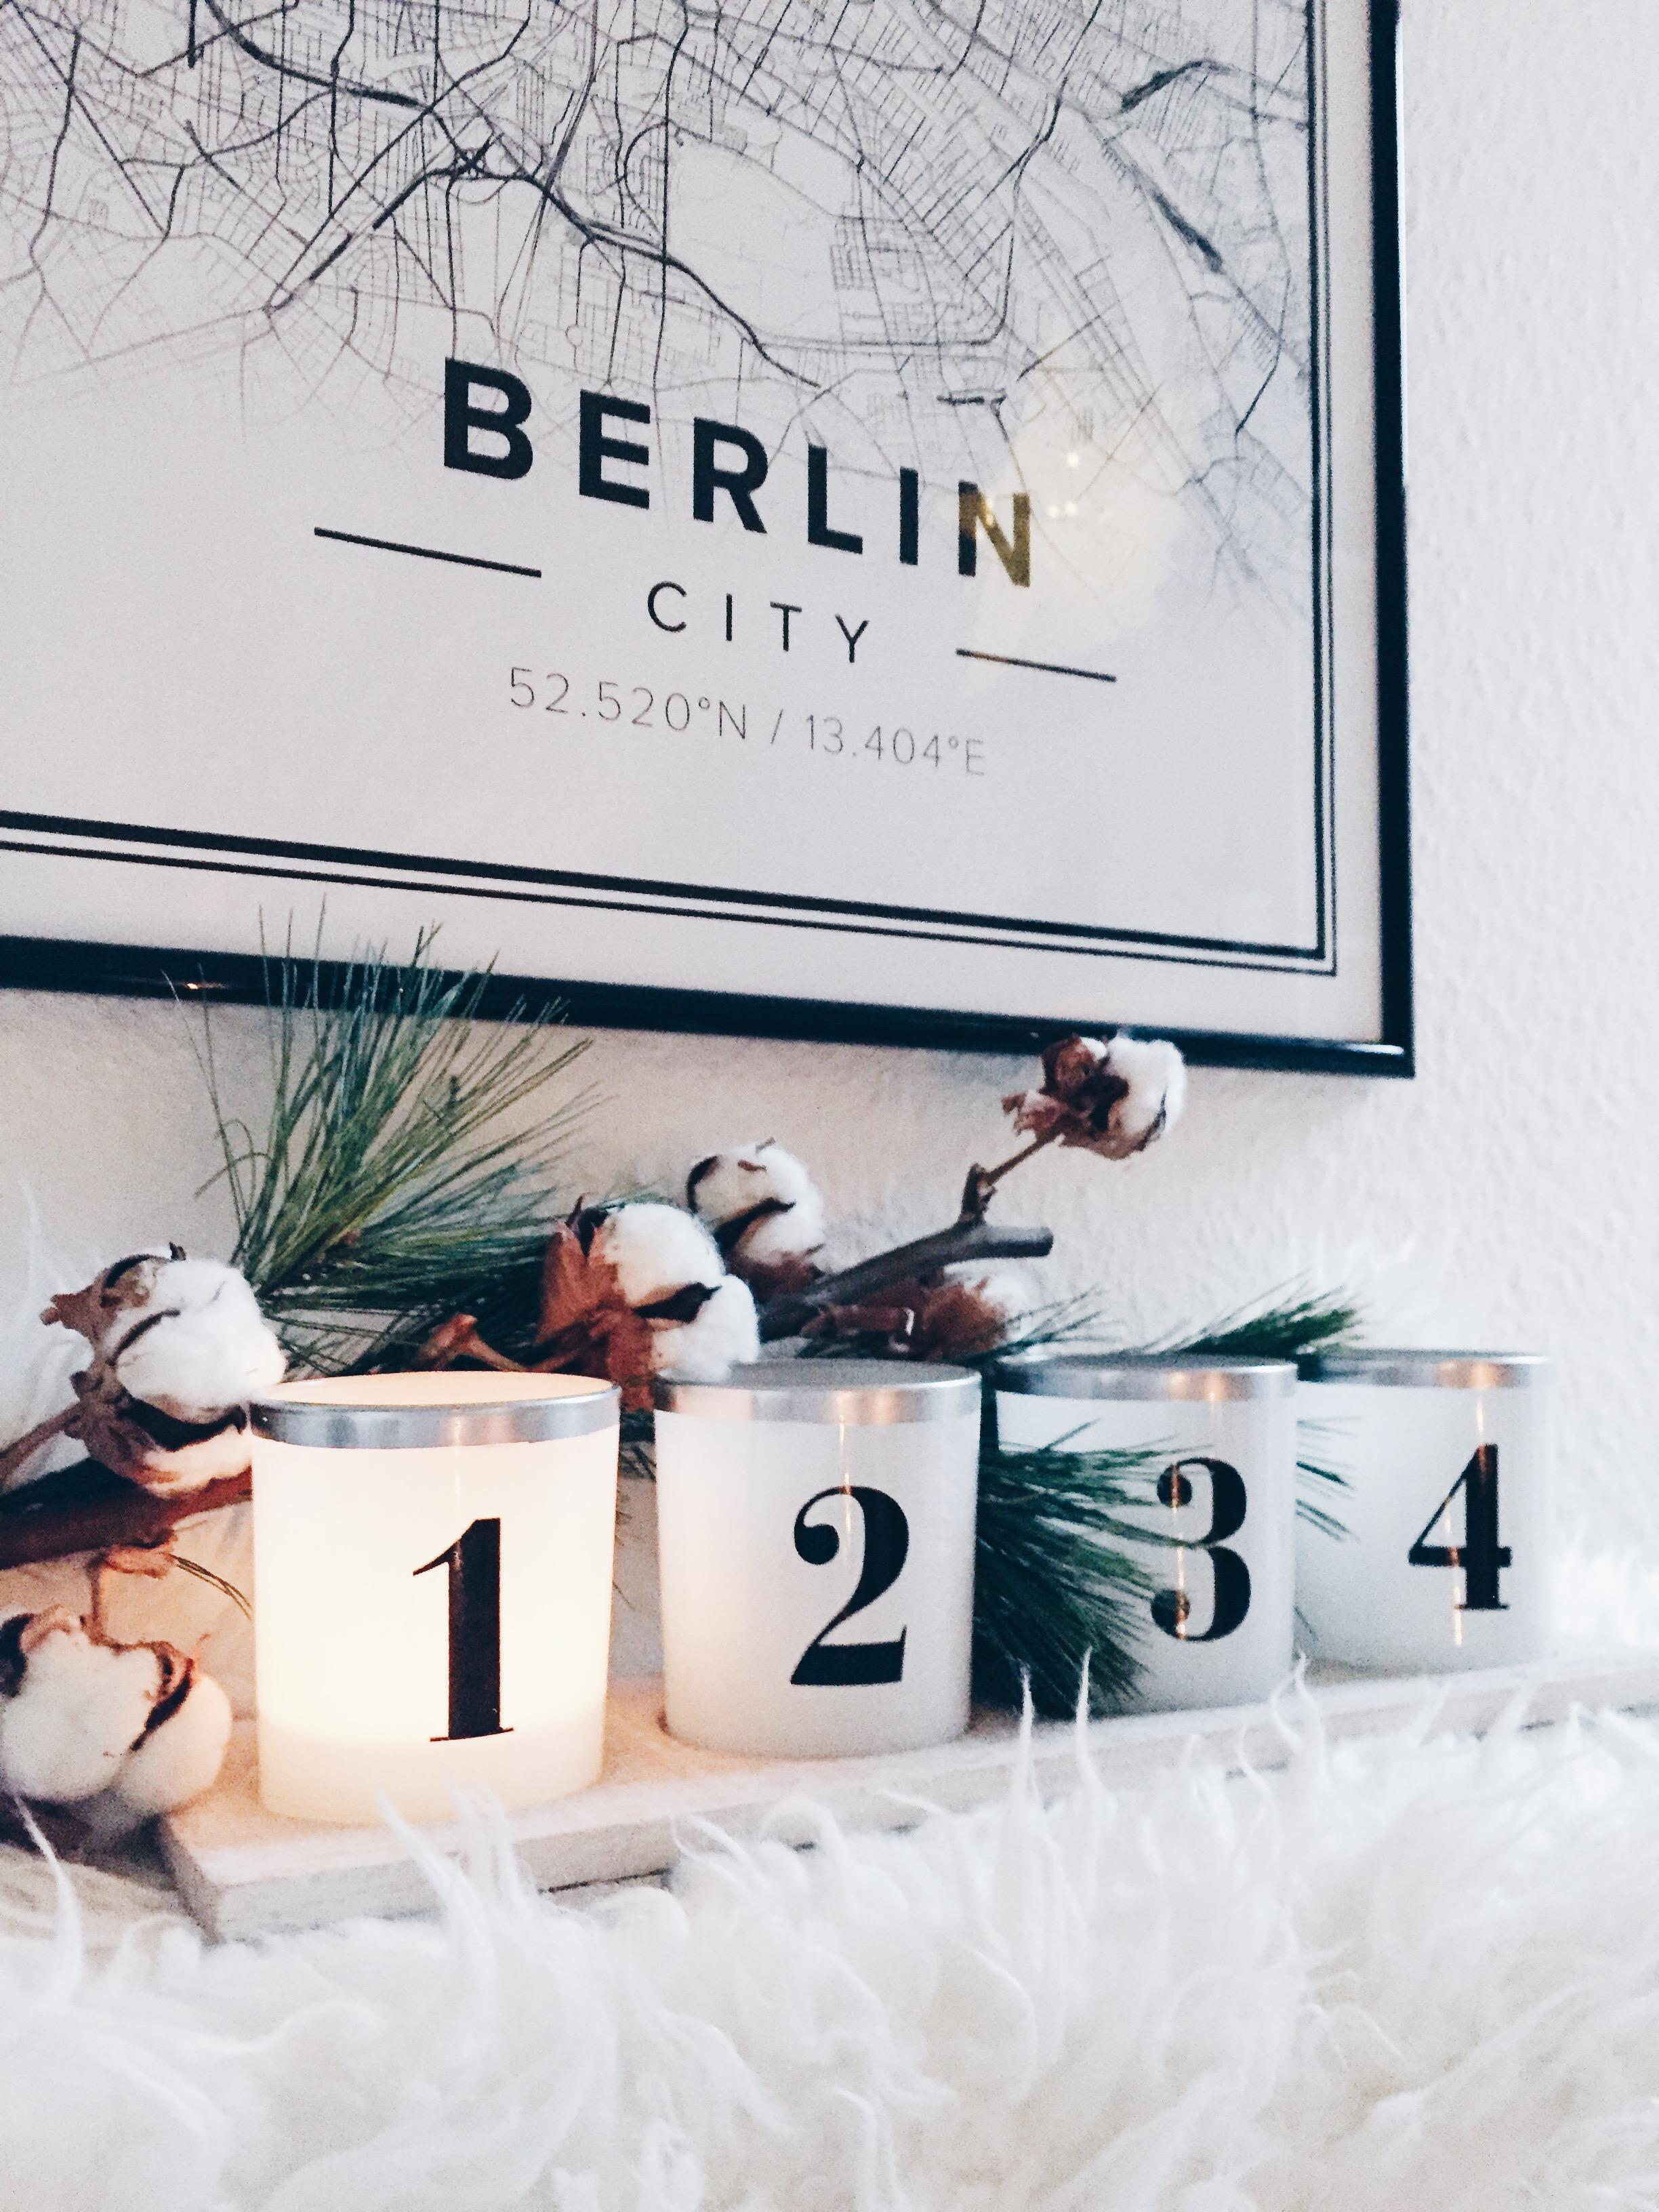 Berlin Liebe 🖤

#map #monochrome #weihnachten